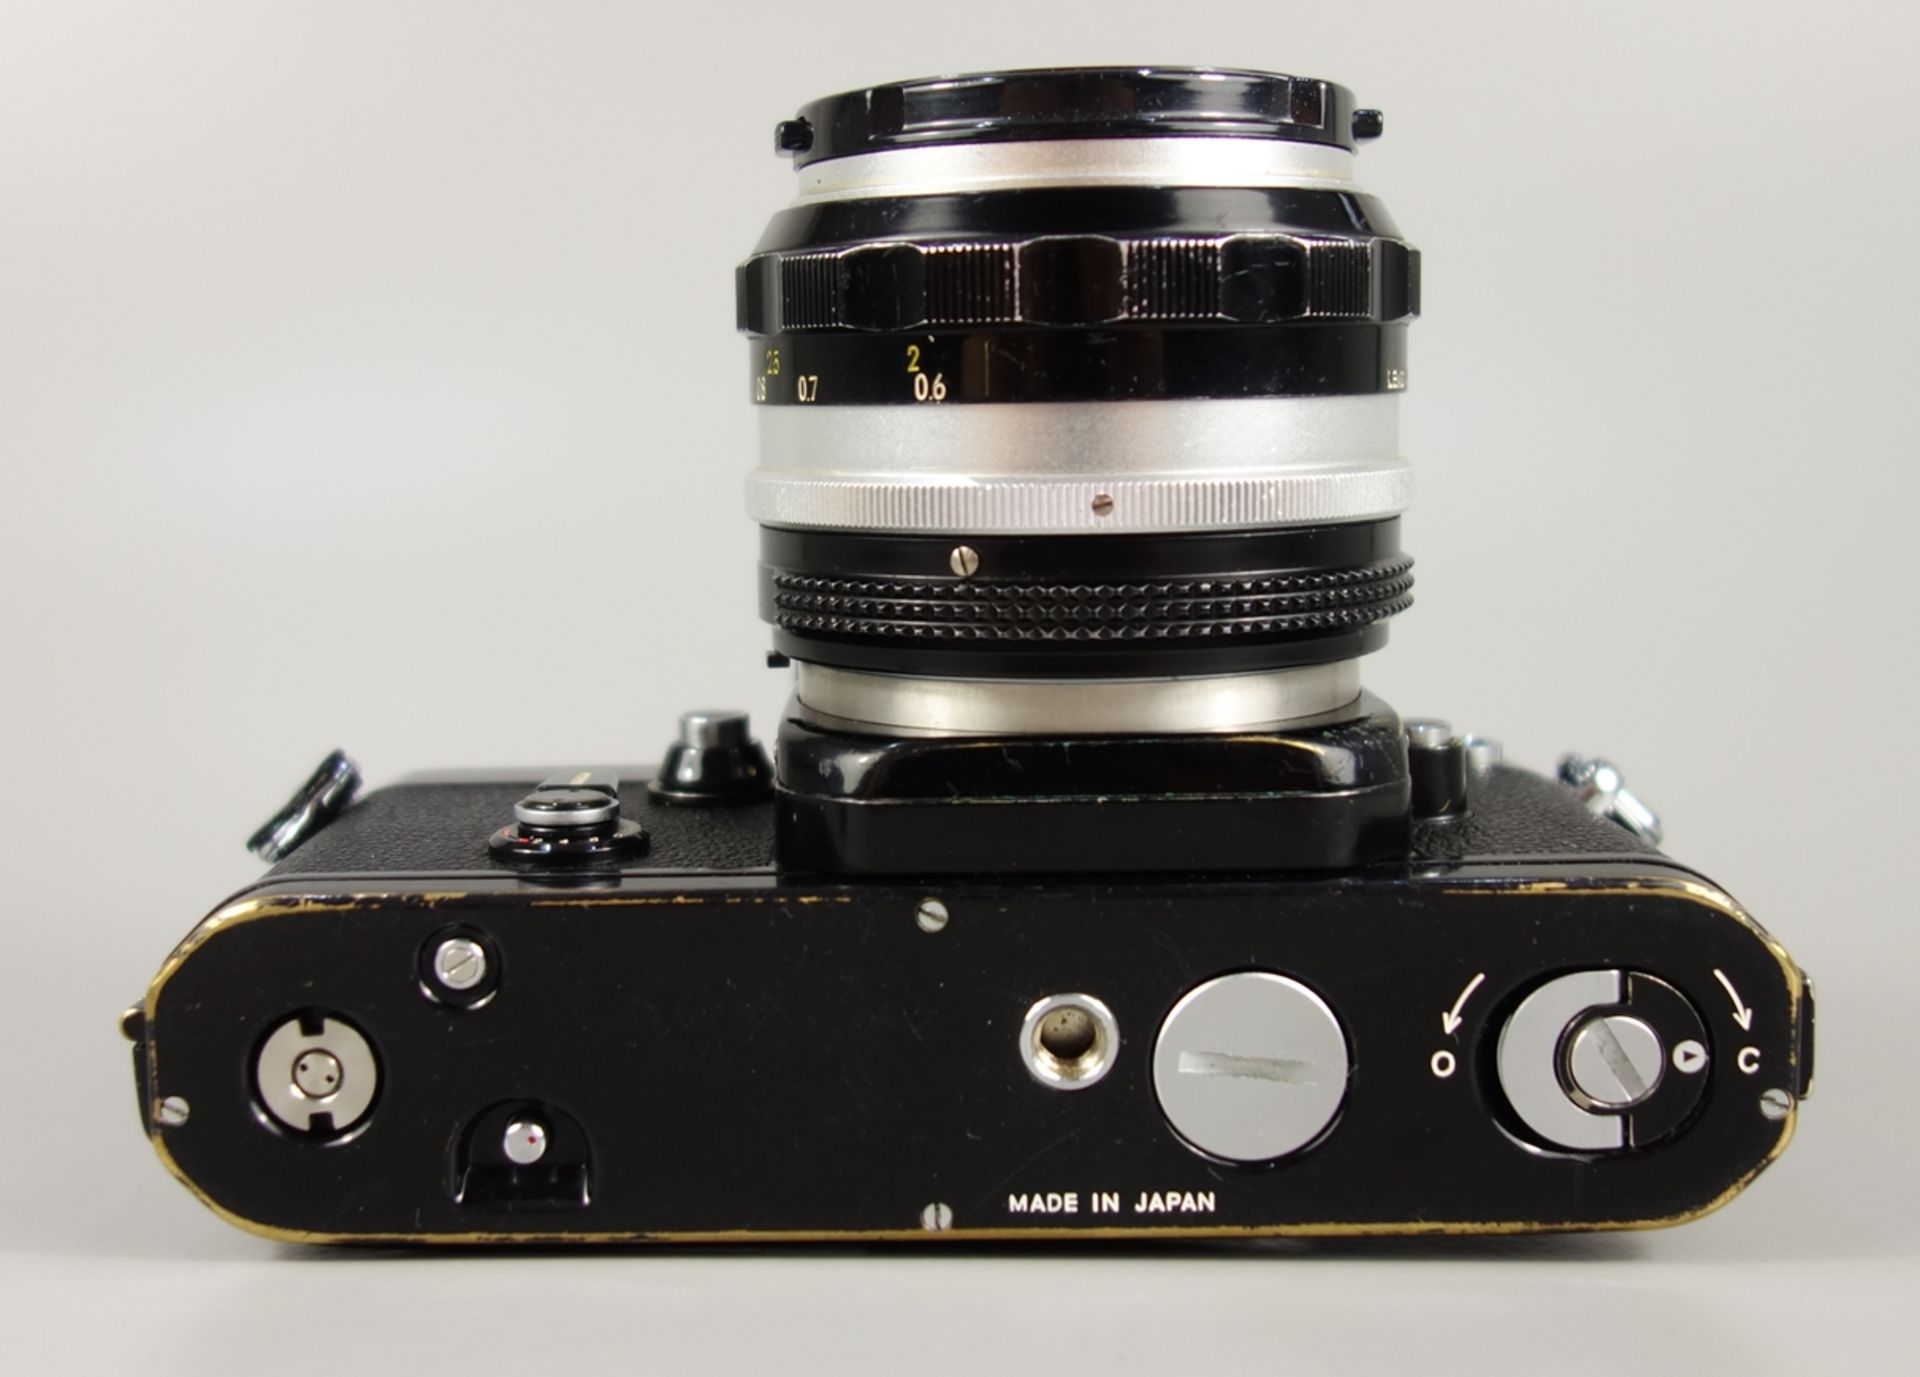 Nikon F2 Photomic, Spiegelreflexkamera, schwarz, 1970er Jahre, Serien-Nr. 7240495, mit Objektiv - Image 4 of 5